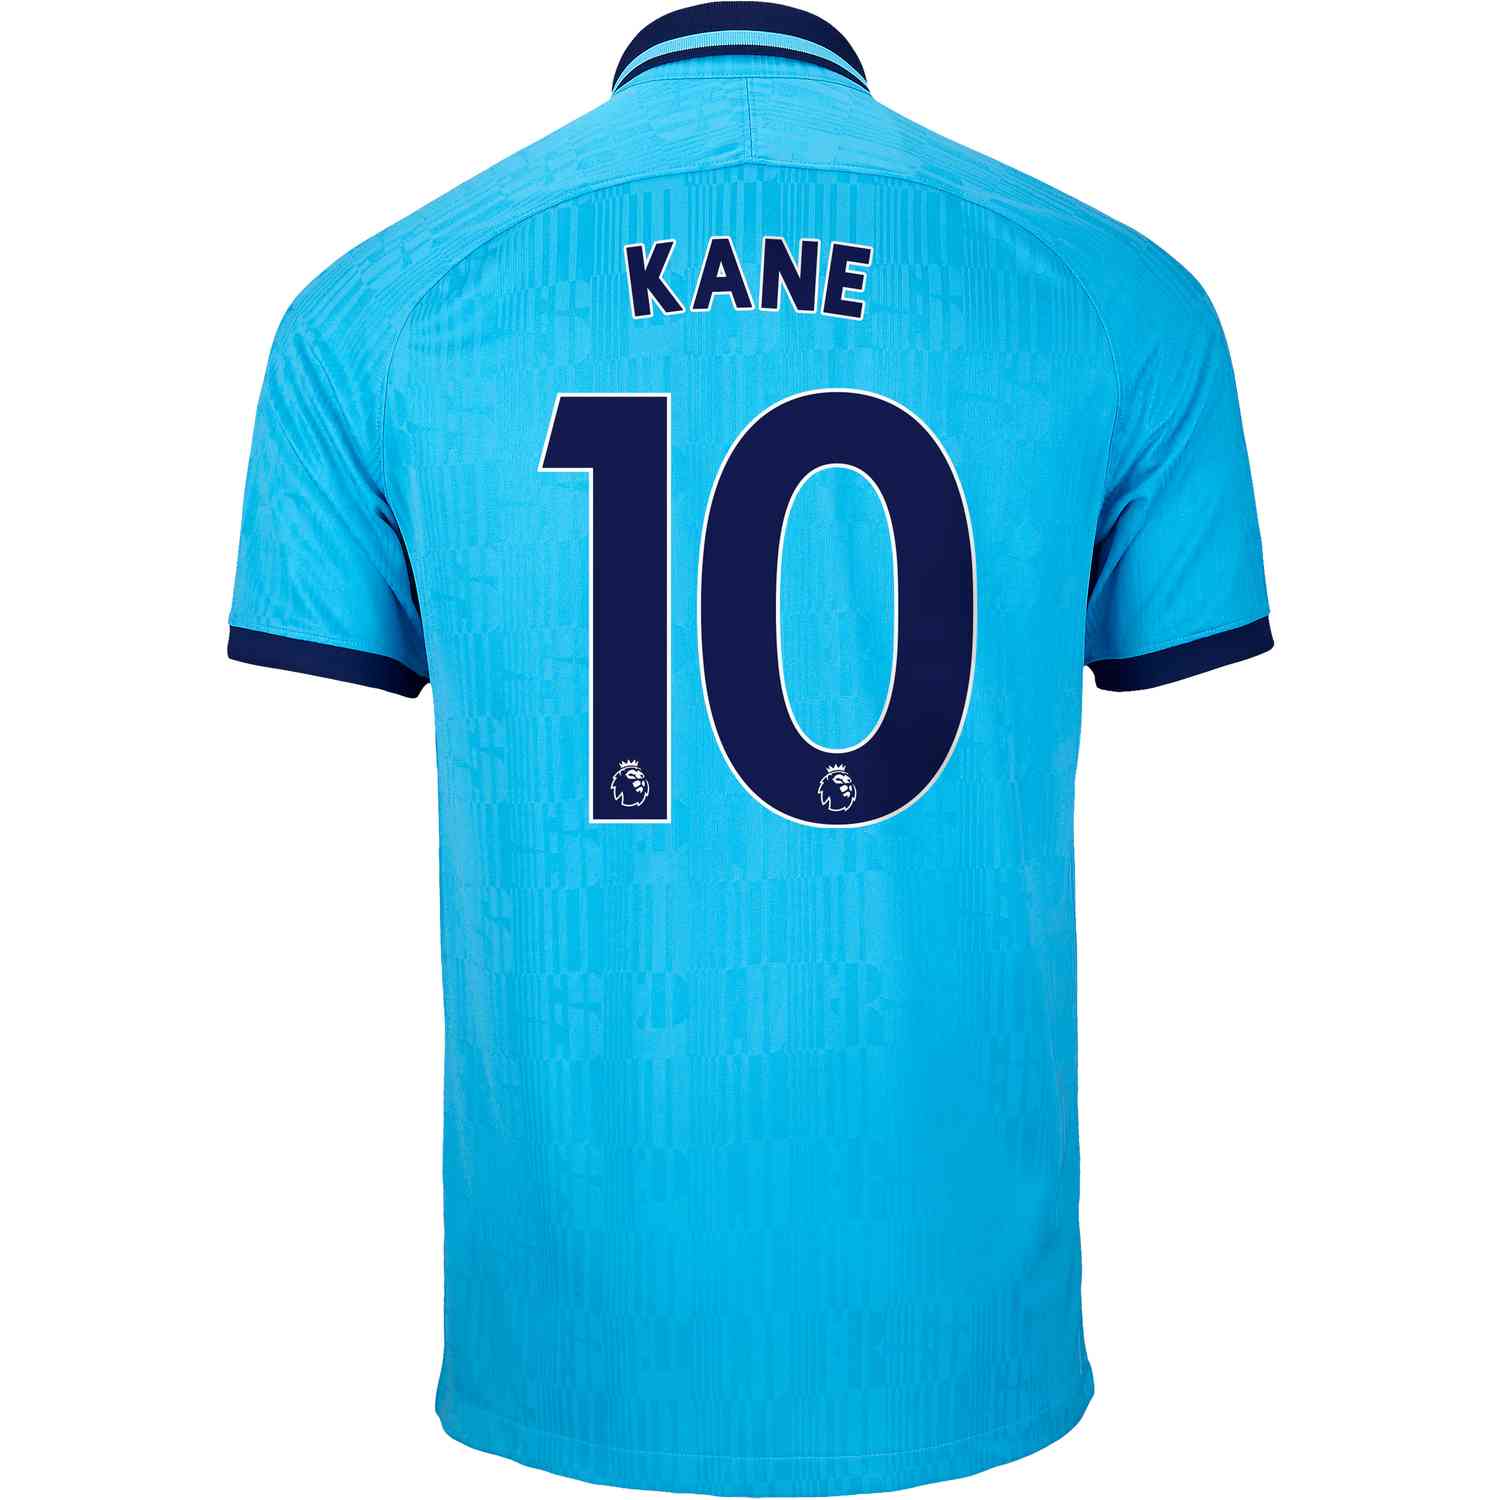 Harry Kane Jerseys  Harry Kane Spurs Shirts from Lids